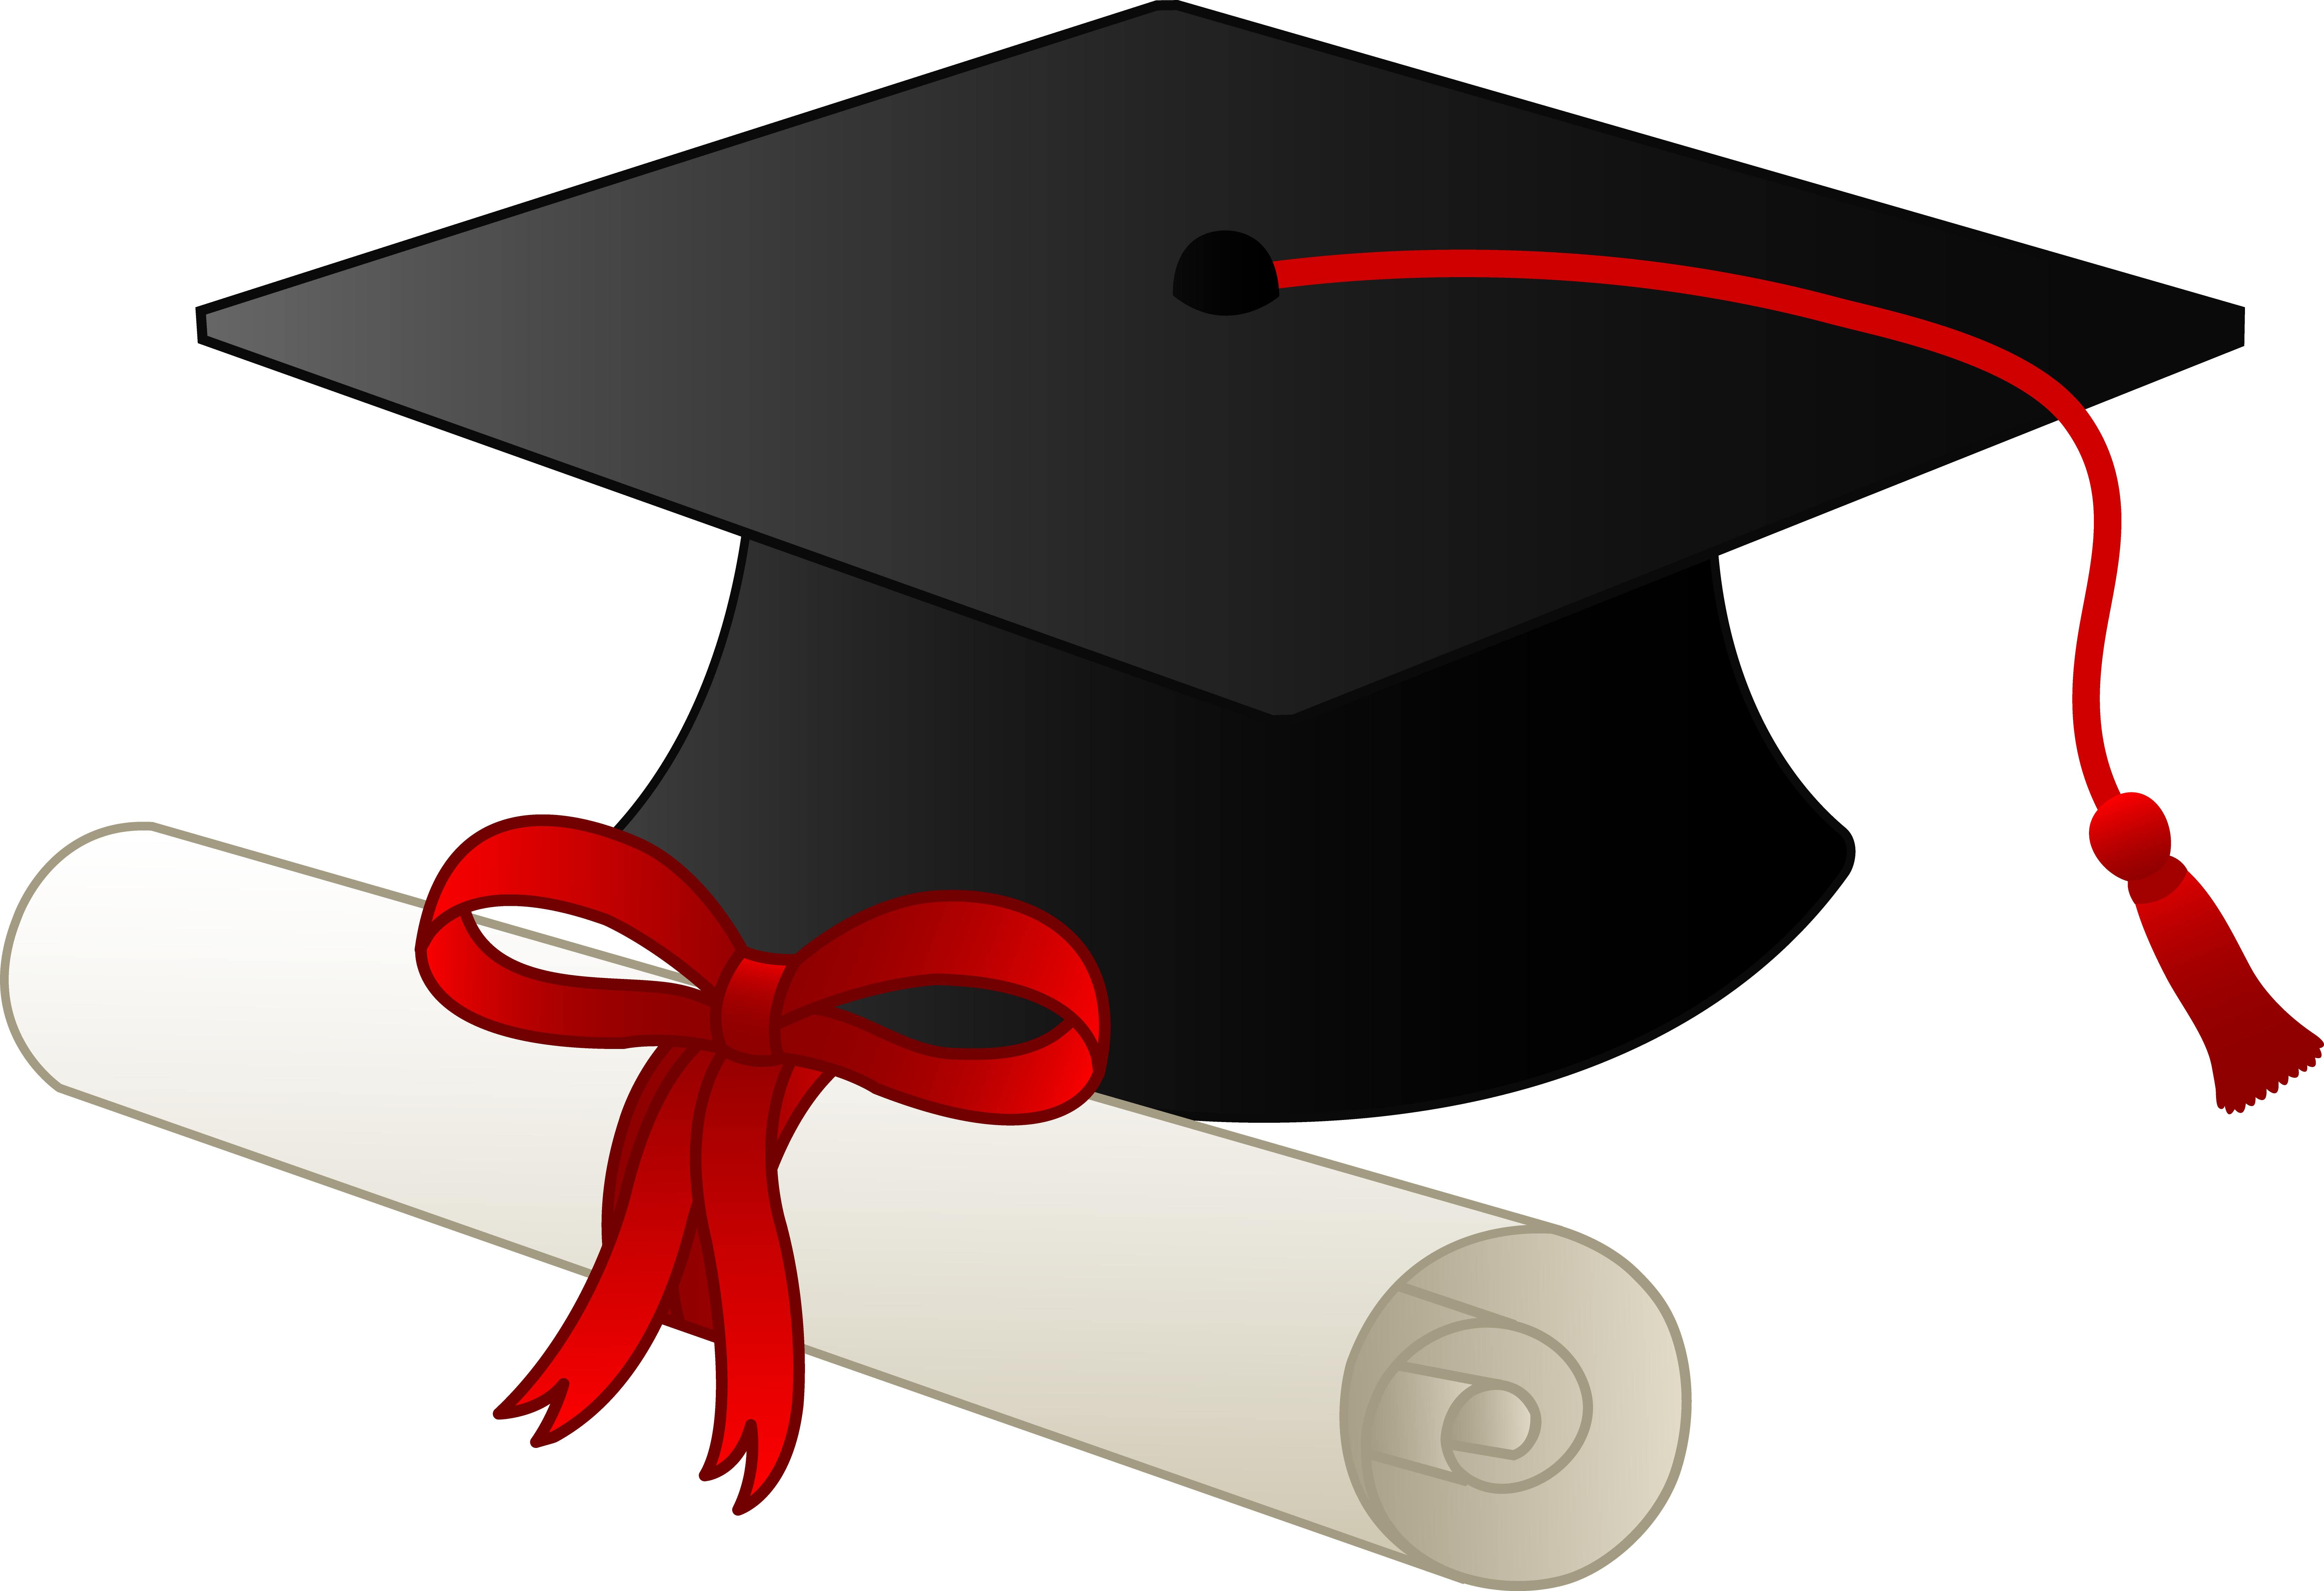 Pics Of Graduation Caps - ClipArt Best